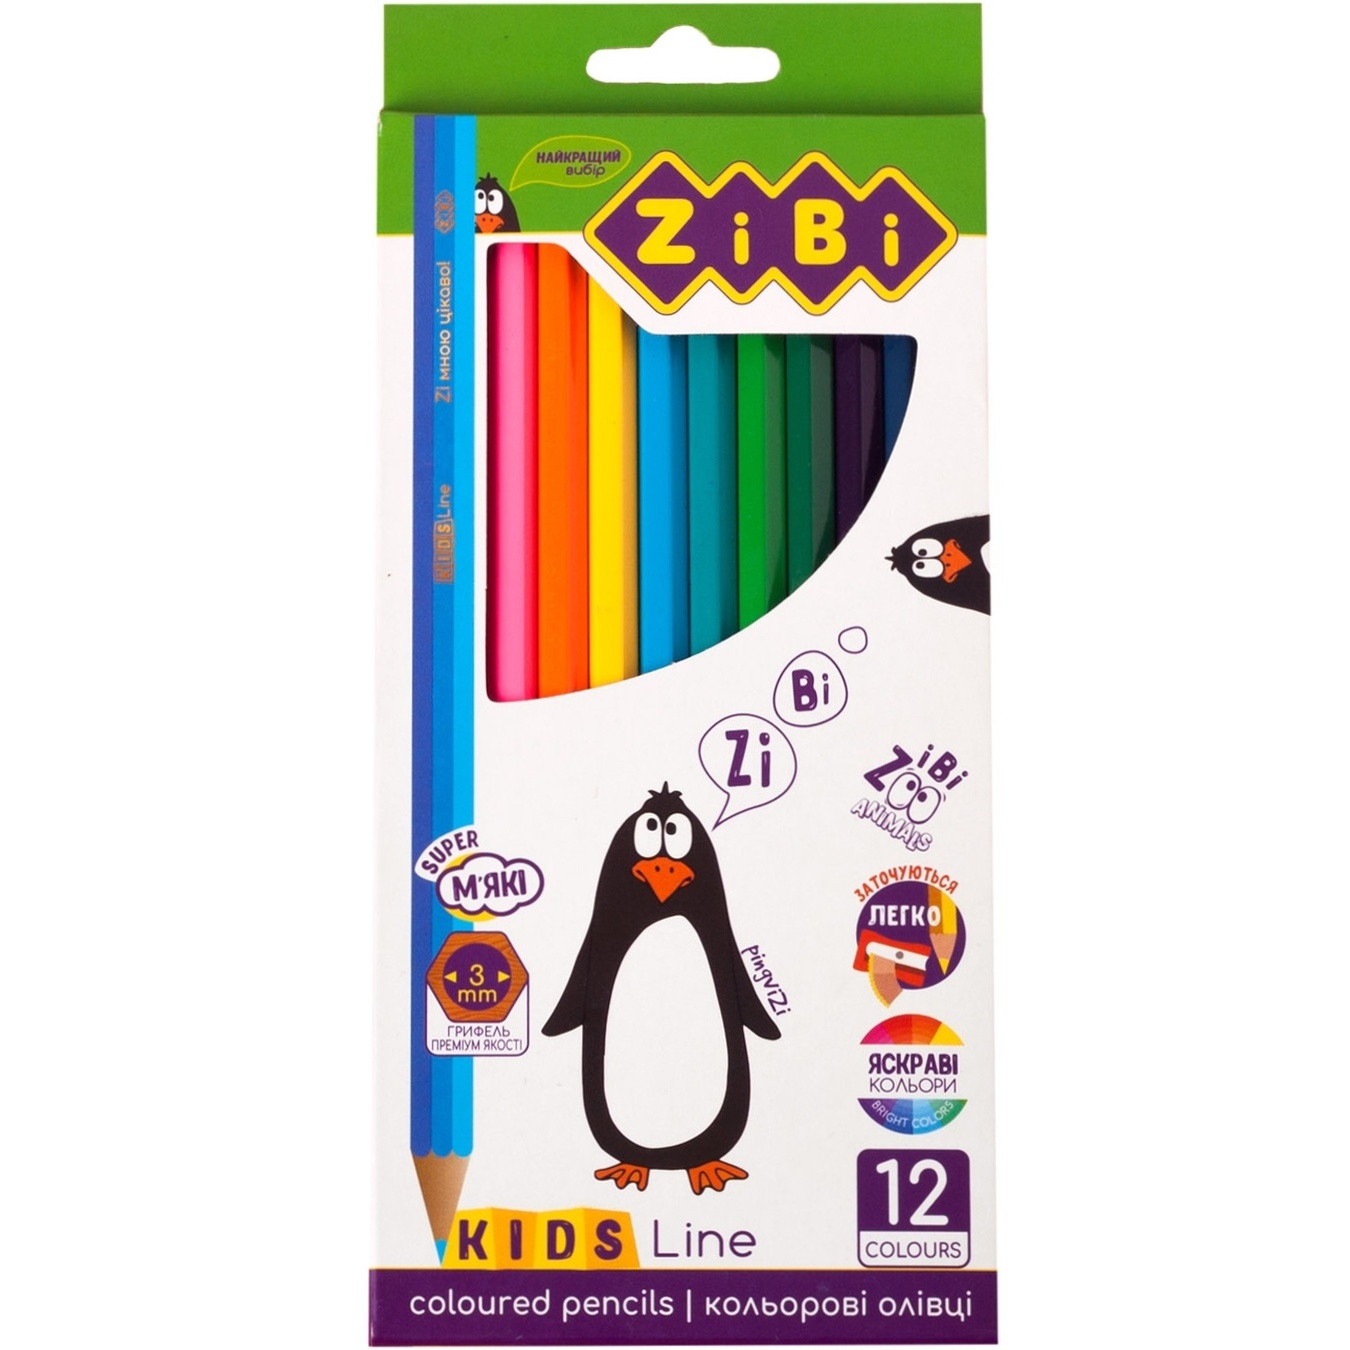 Colored pencils ZiBi Kids Line 12 colors